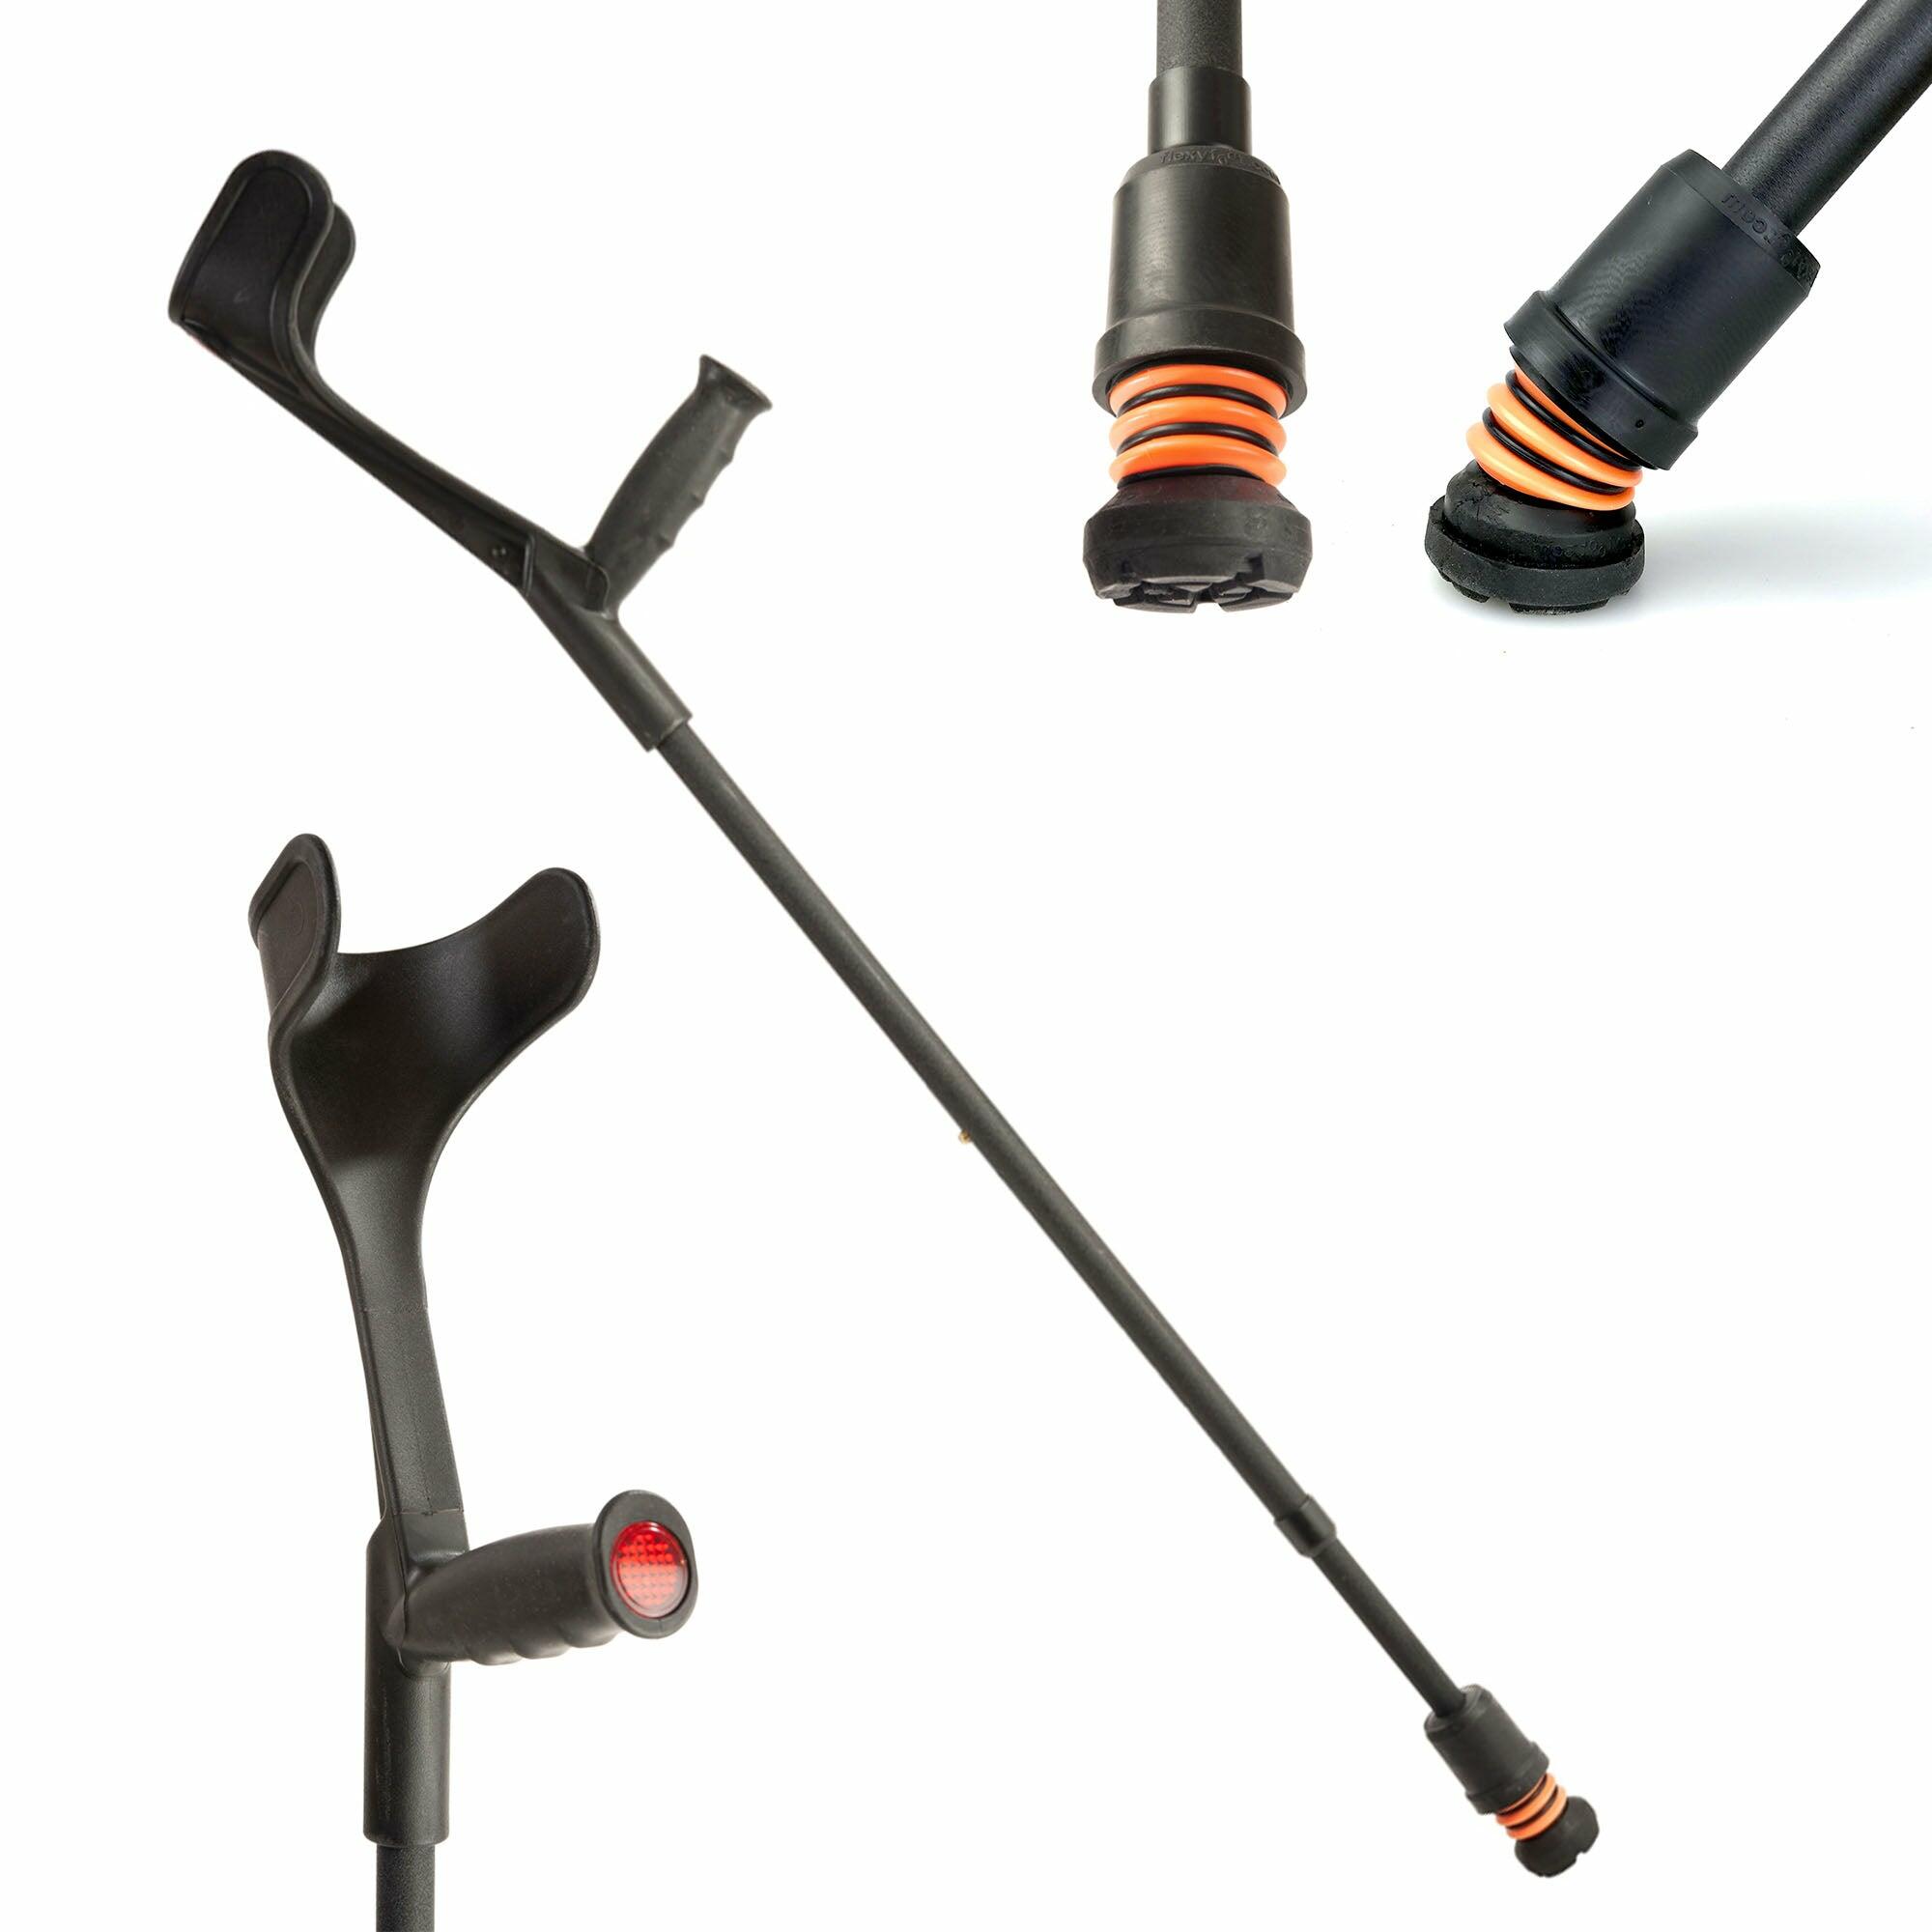 Flexyfoot Soft Grip Open Cuff Crutches - Textured Black